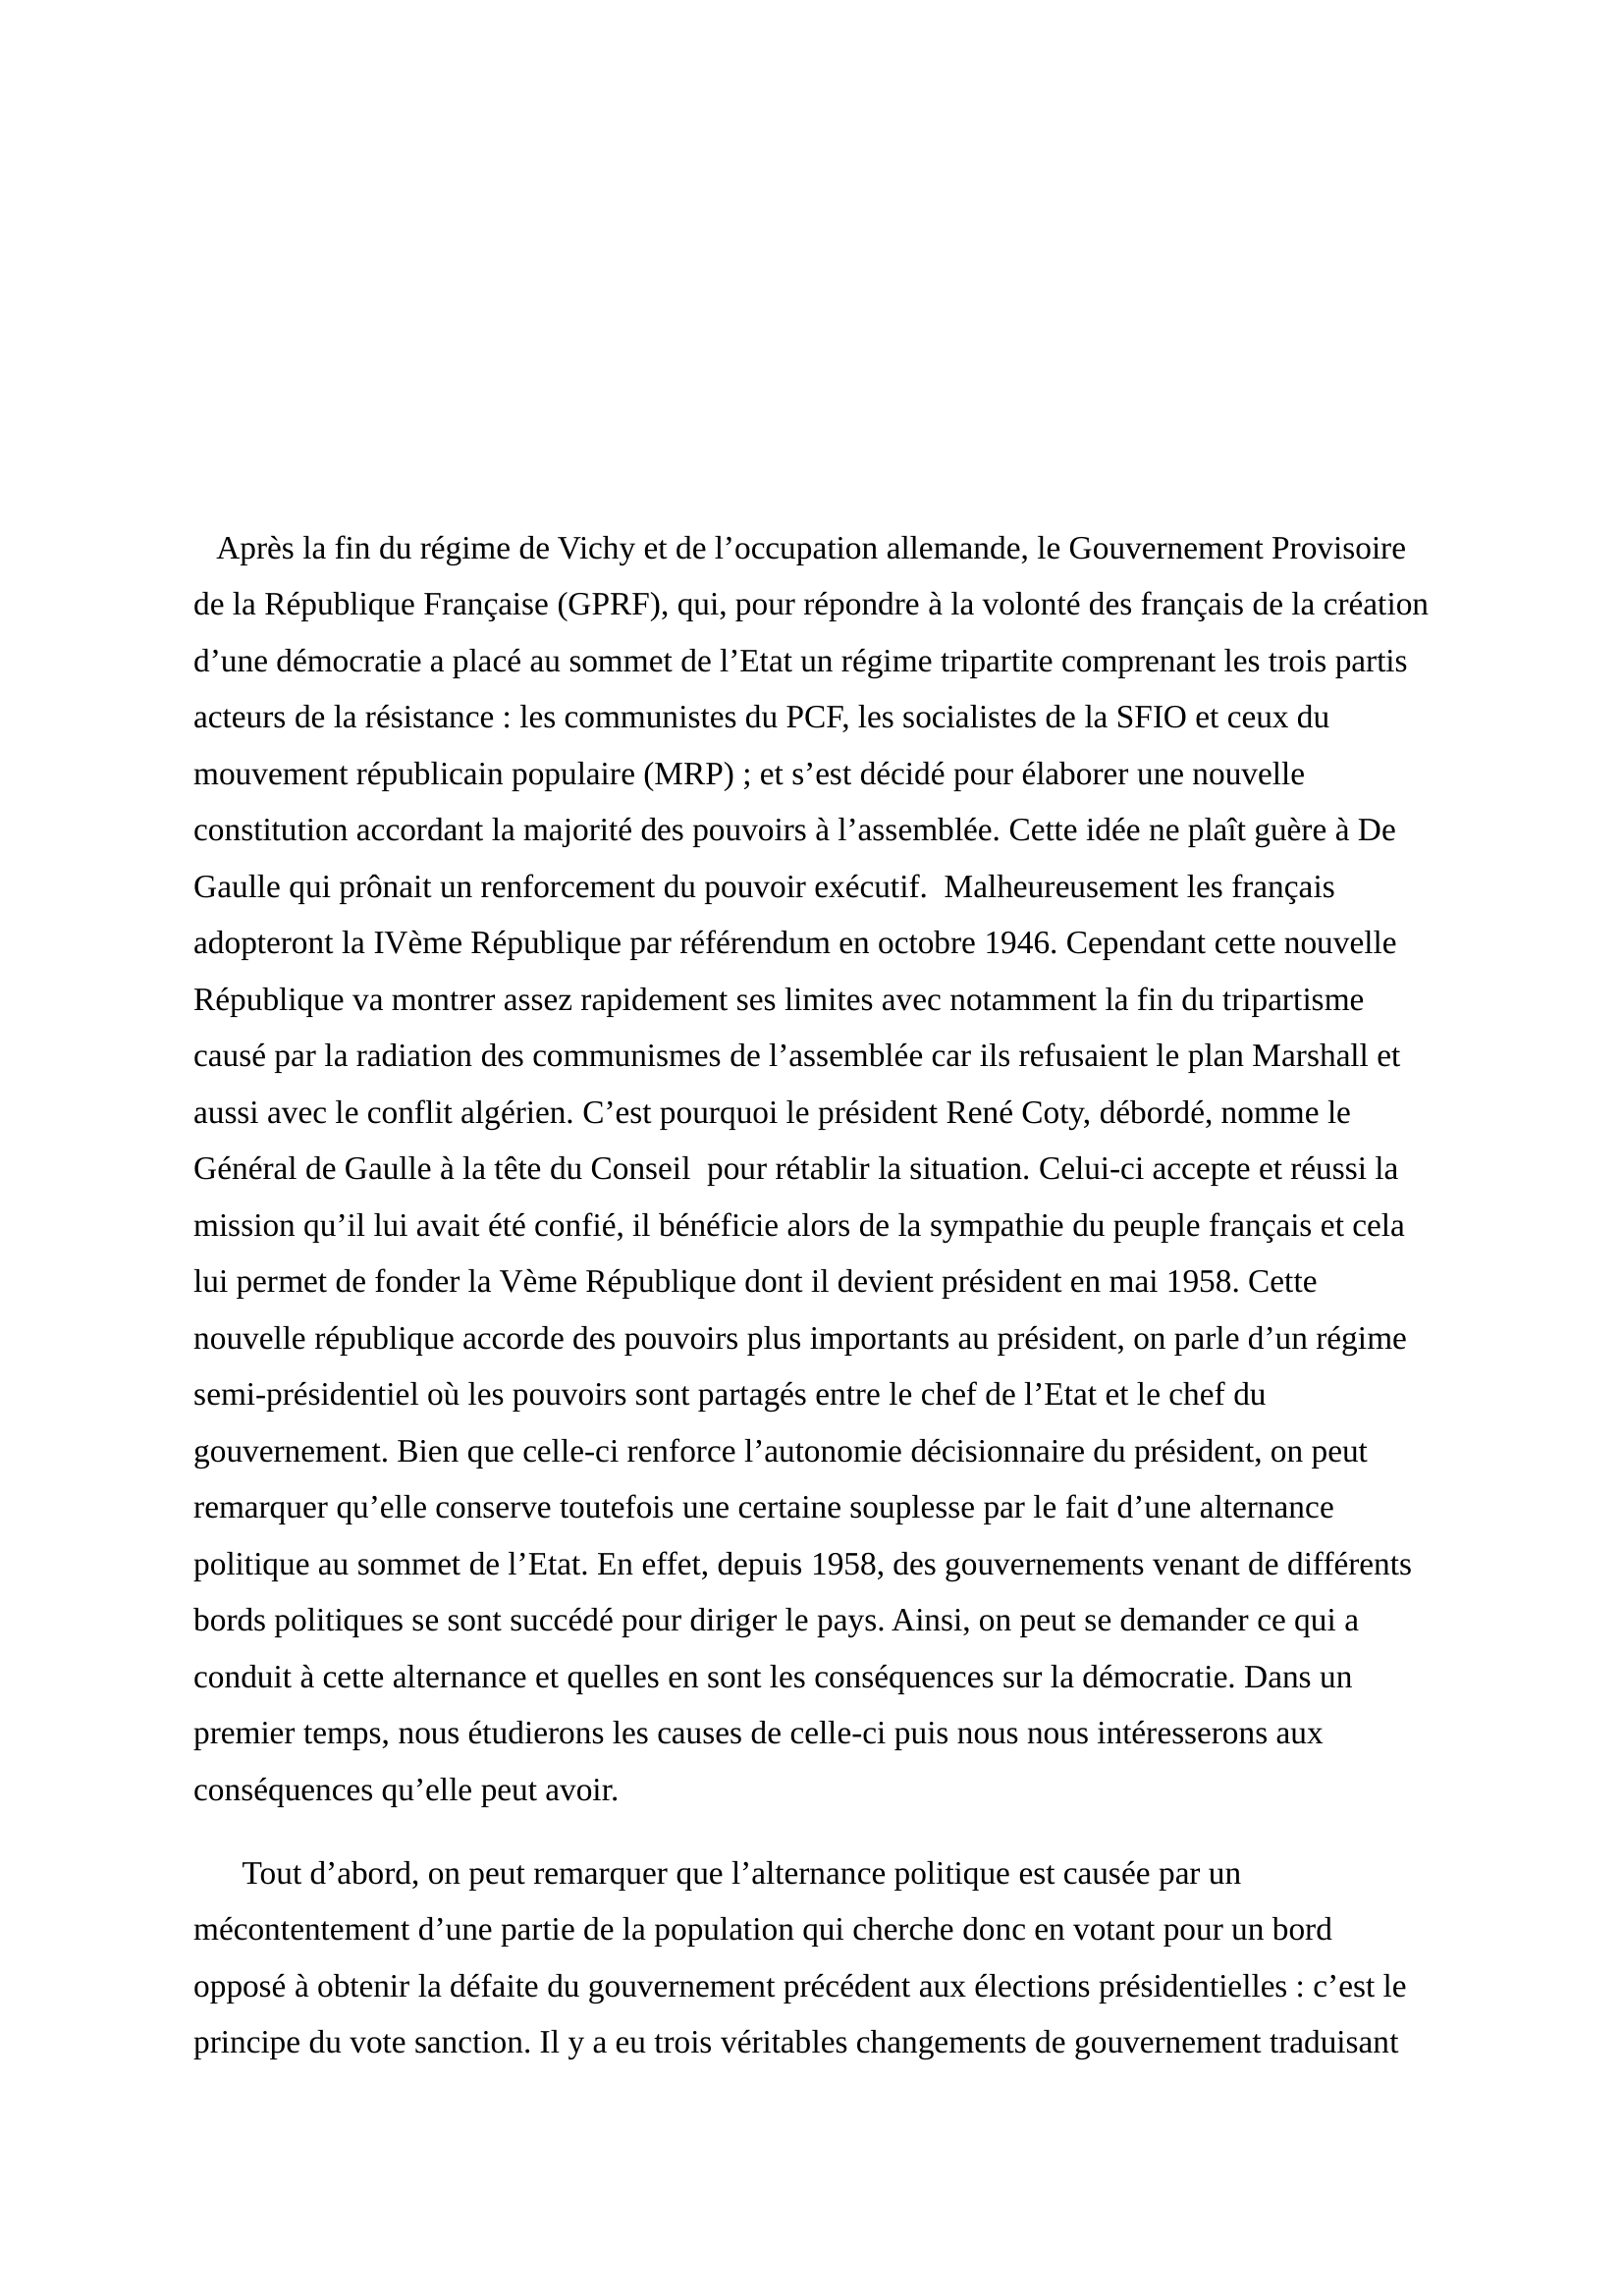 Prévisualisation du document alternance politique ecjs